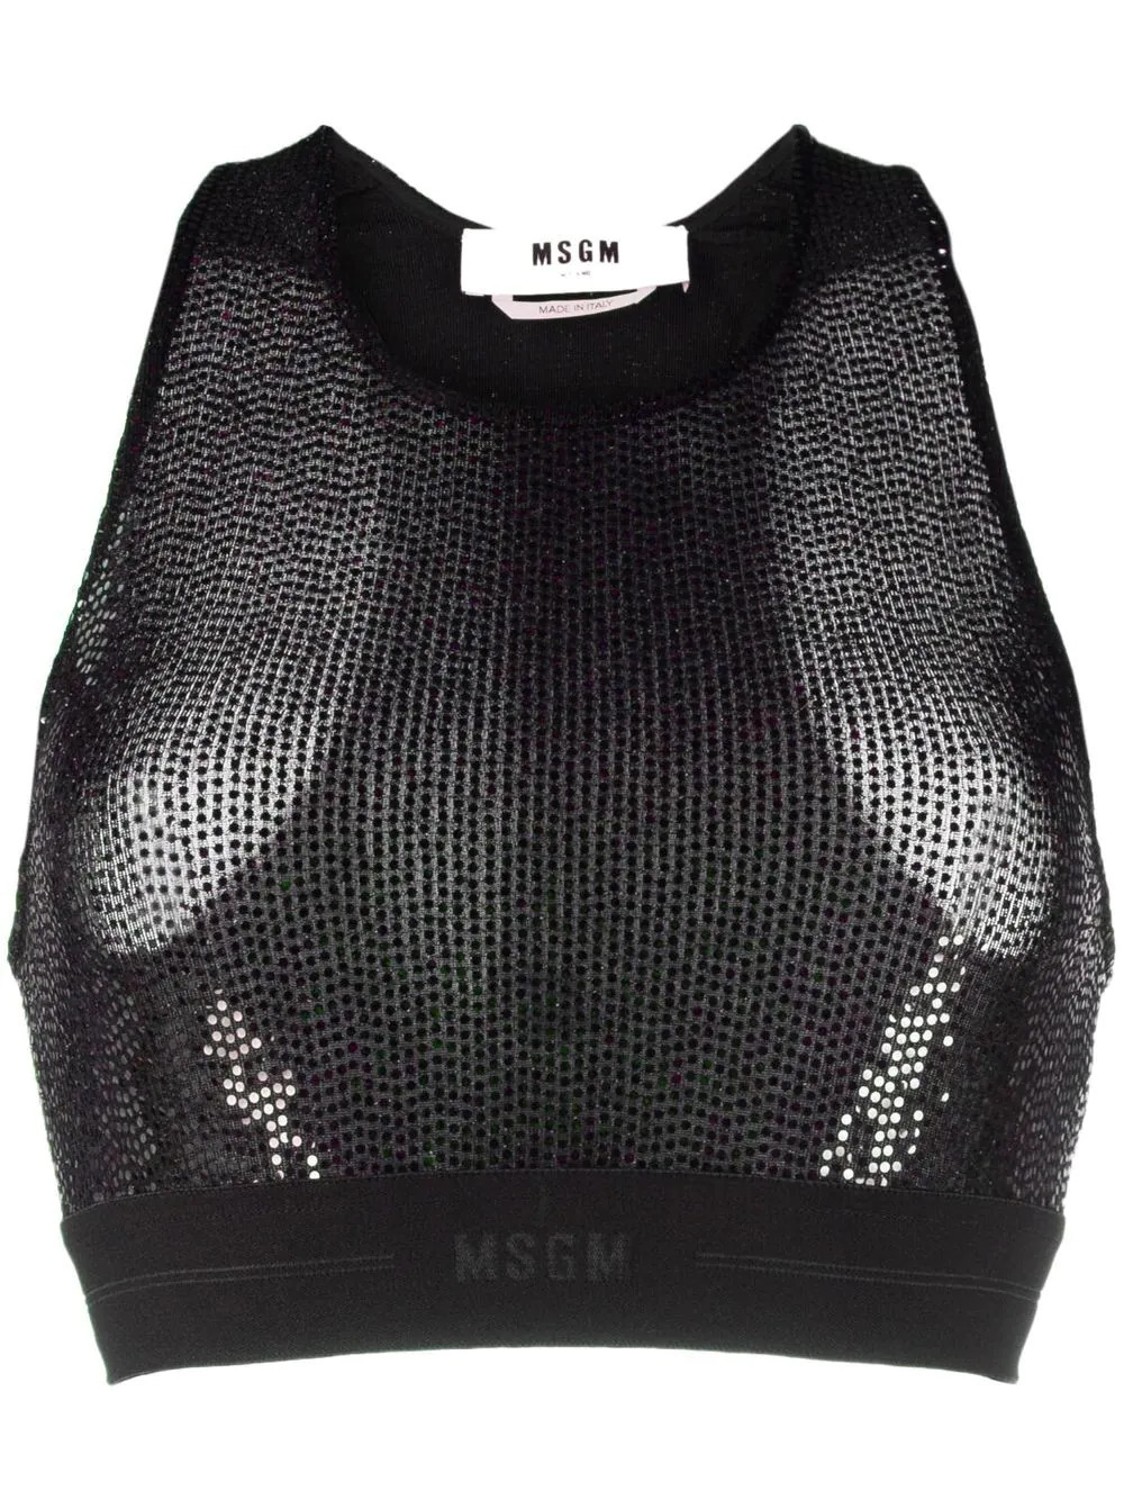 shop MSGM  Tops: Tops MSGM, top corto, sotto giacca, modello sportivo, in micro paillettes nere.

Composizione: 87% poliammide, 8% poliestere, 5% elastan. number 2457